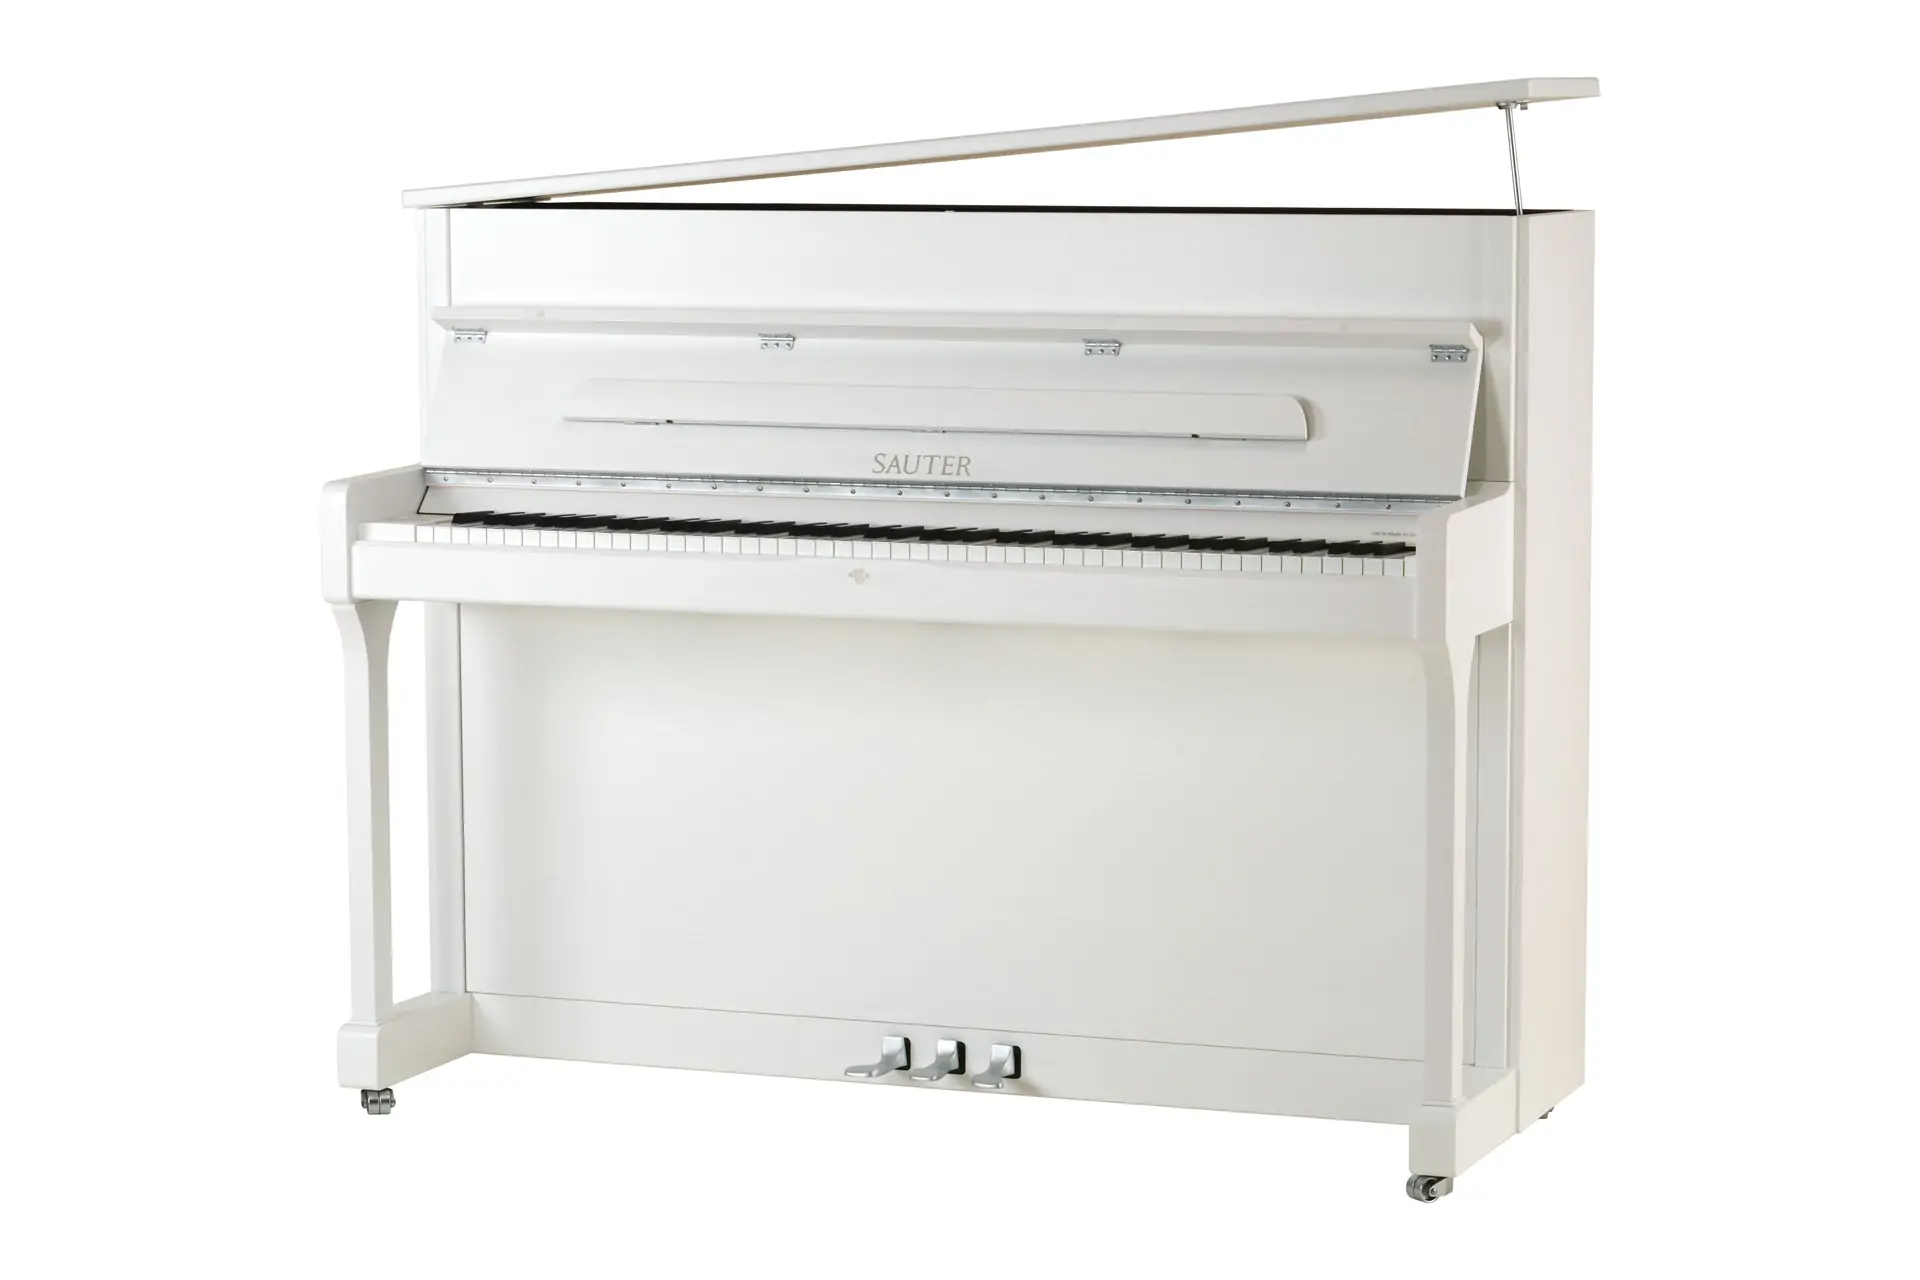 【アコースティックピアノ】ドイツSAUTER社 創業200周年記念特別モデル、20台限定発売!